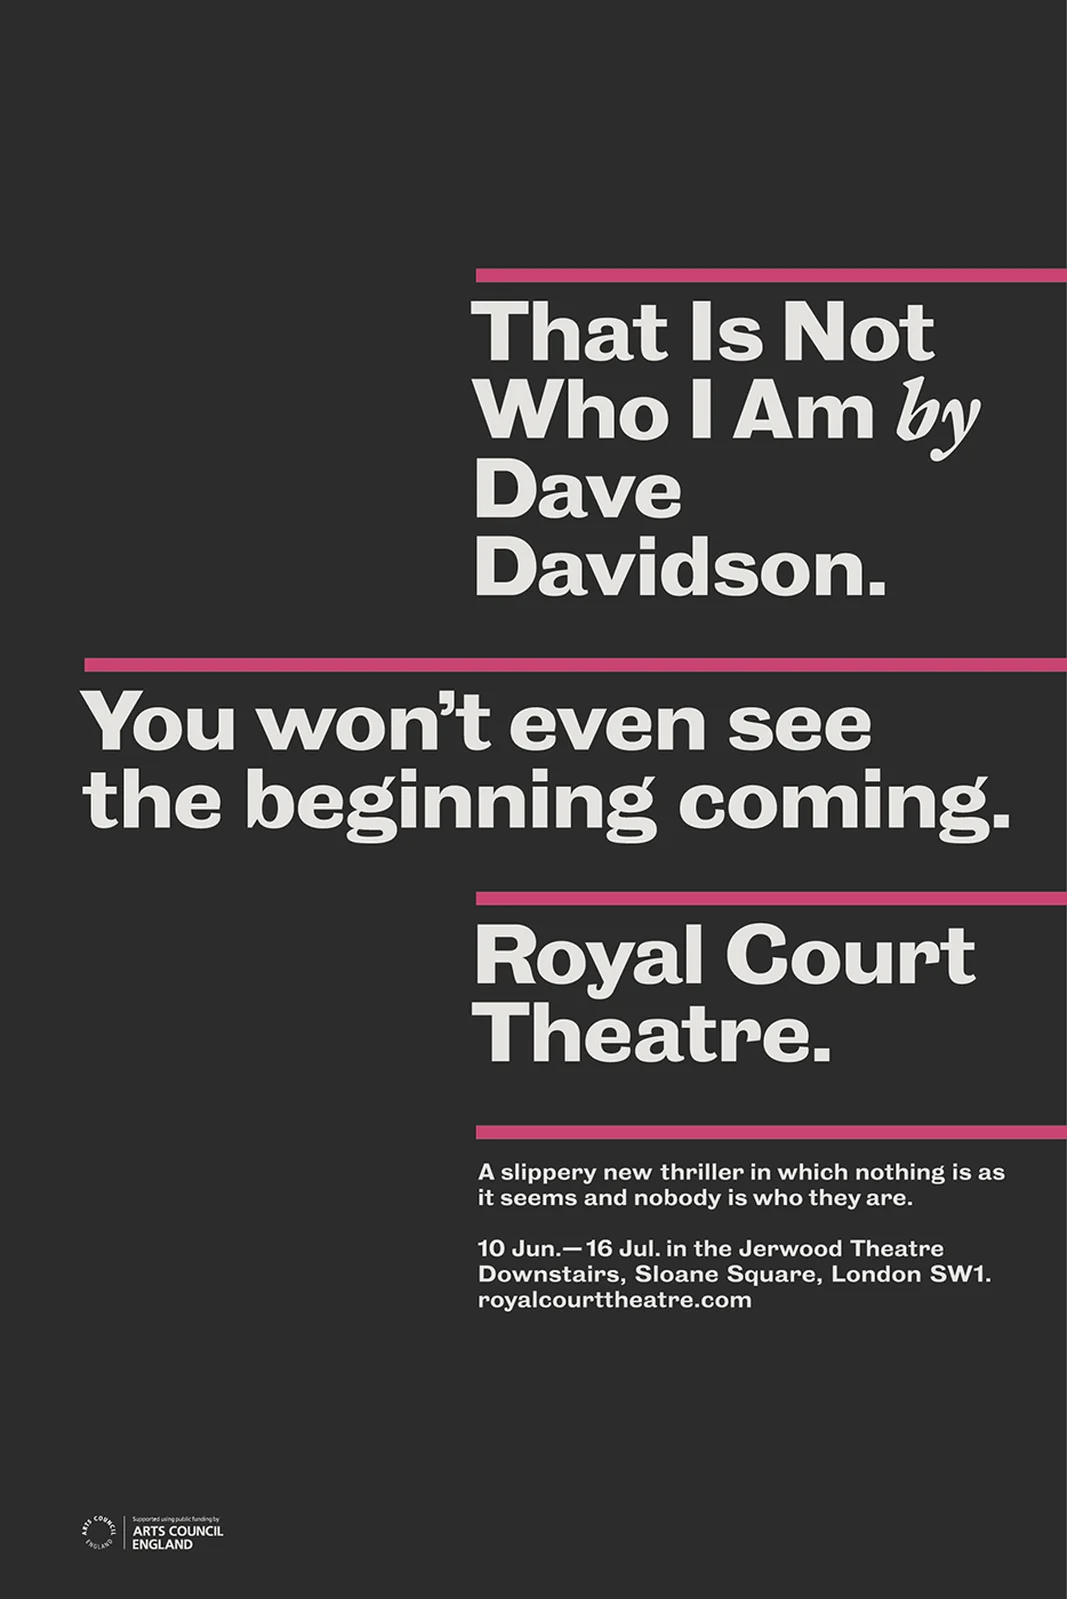 paul_belford_ltd_royal_court_theatre_poster_tinwia2.webp